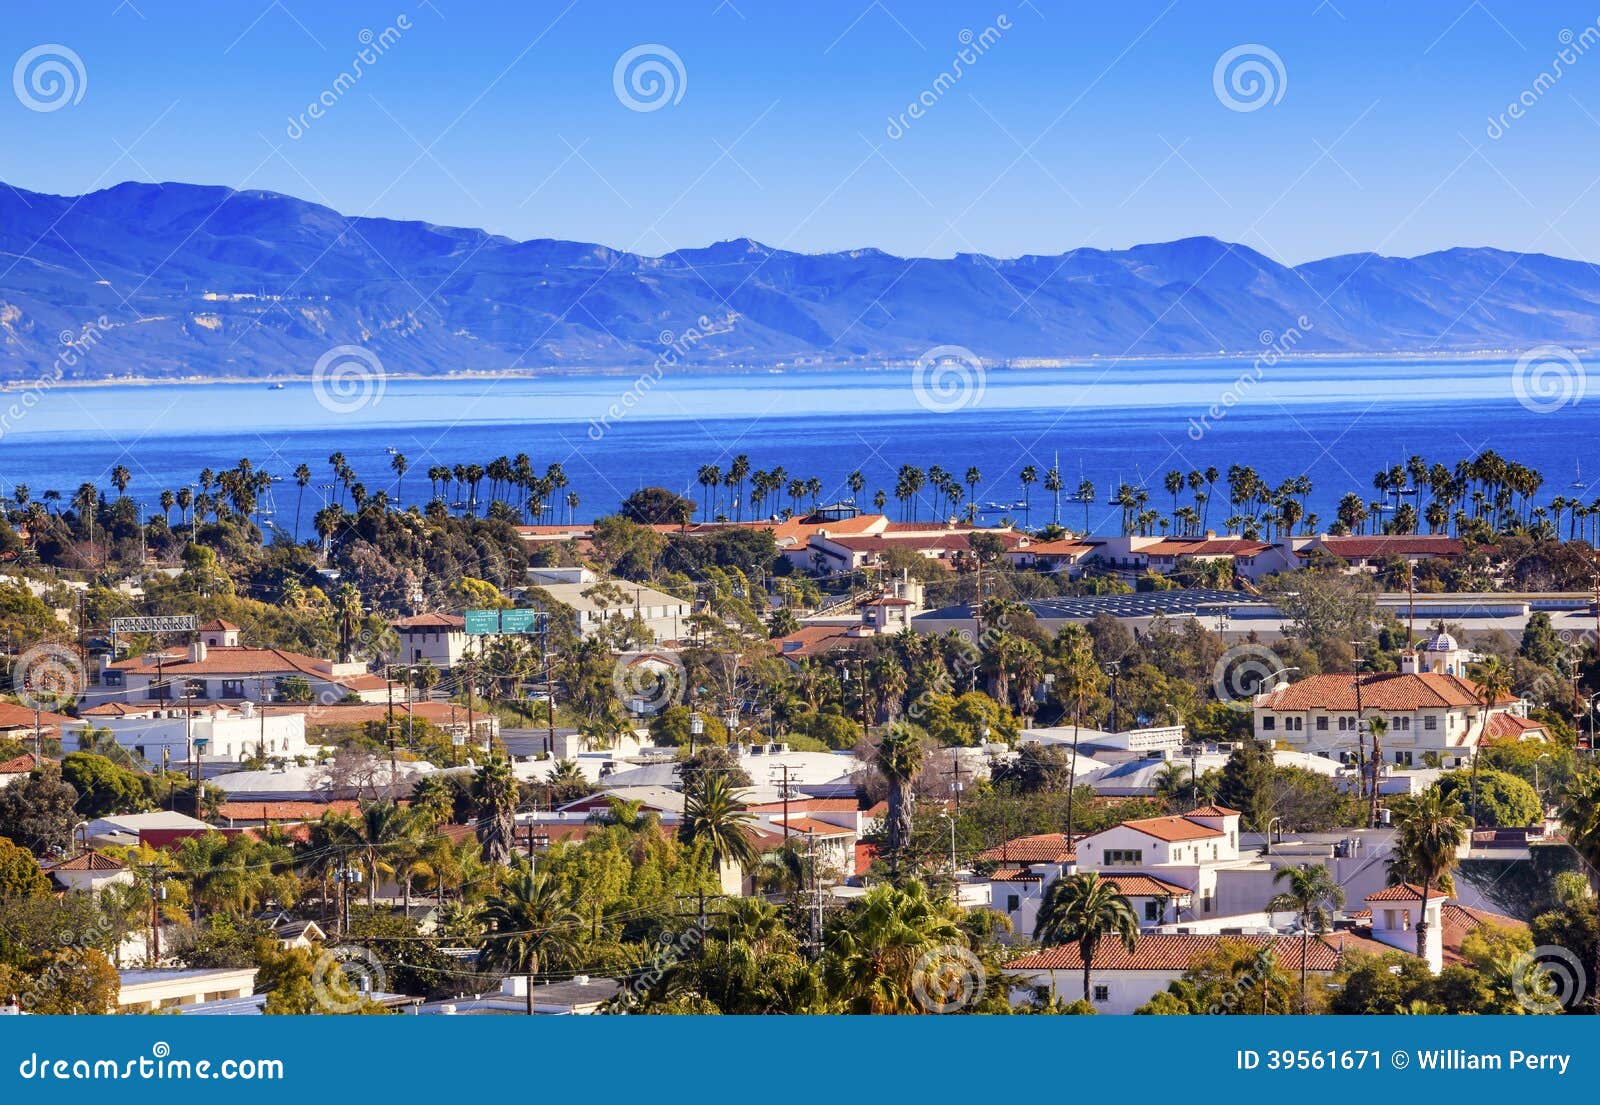 buildings coastline pacific ocean santa barbara california